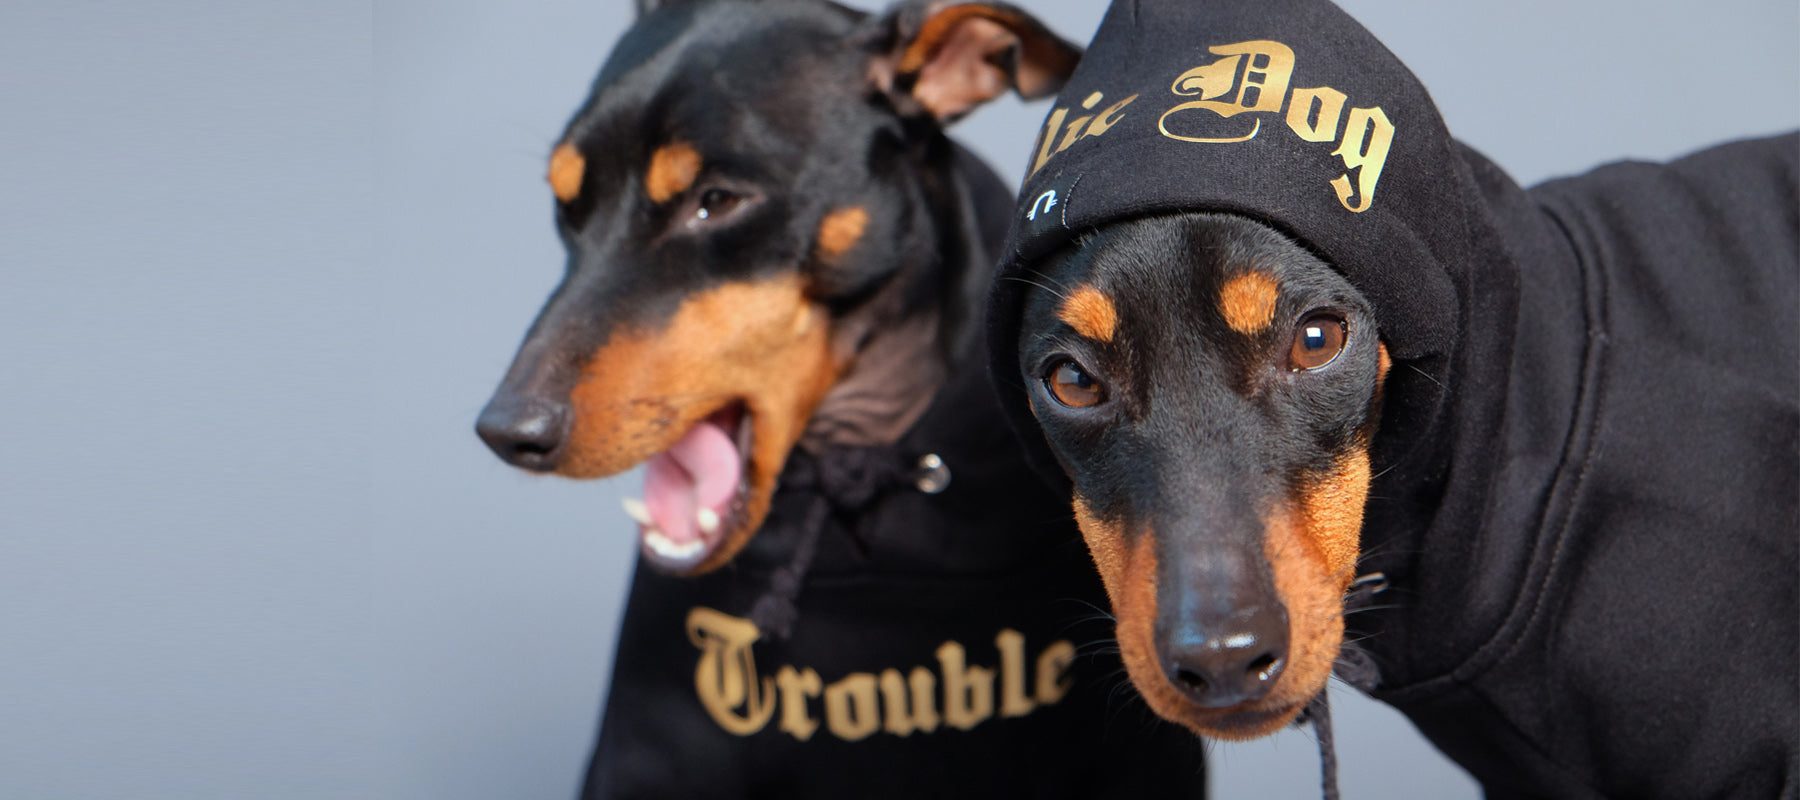 Personalised dog hoodies